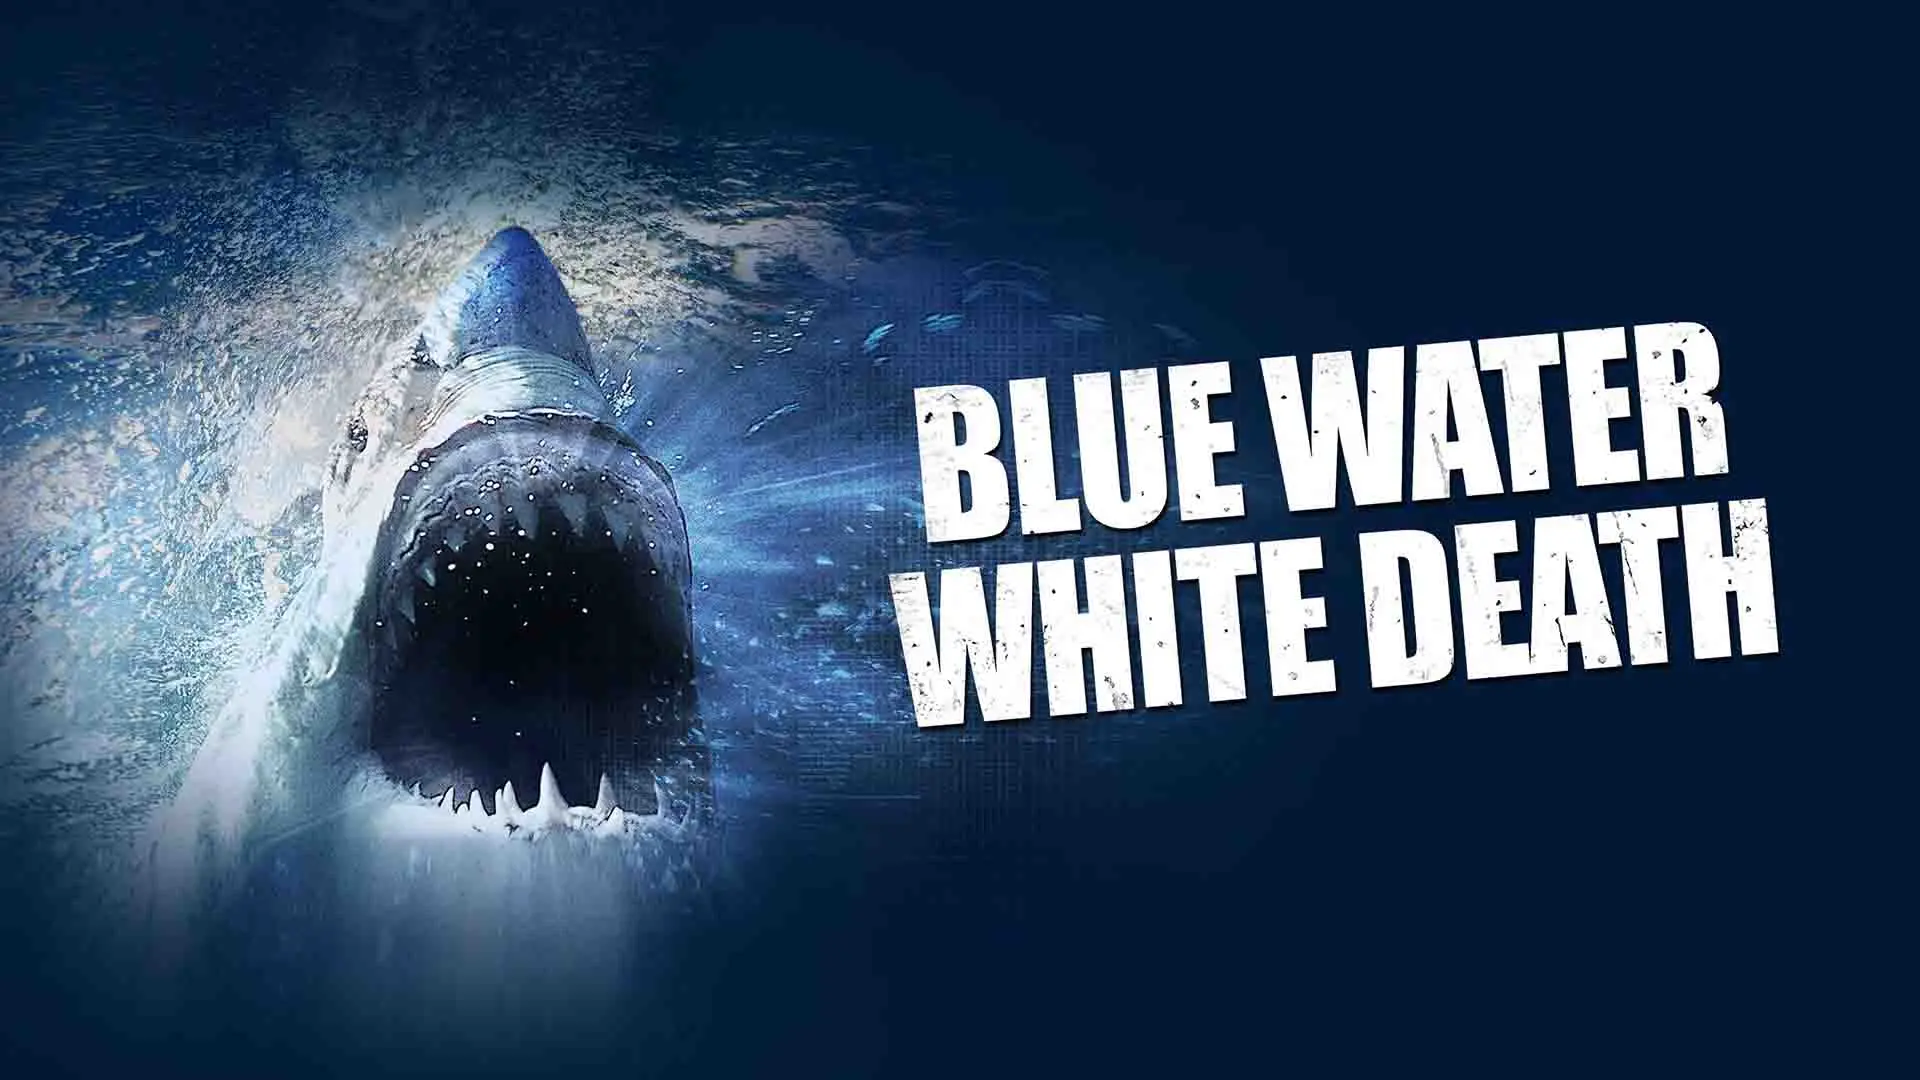 کوسه سفید بزرگ در حال غرش کردن در پوستر فیلم Blue Water